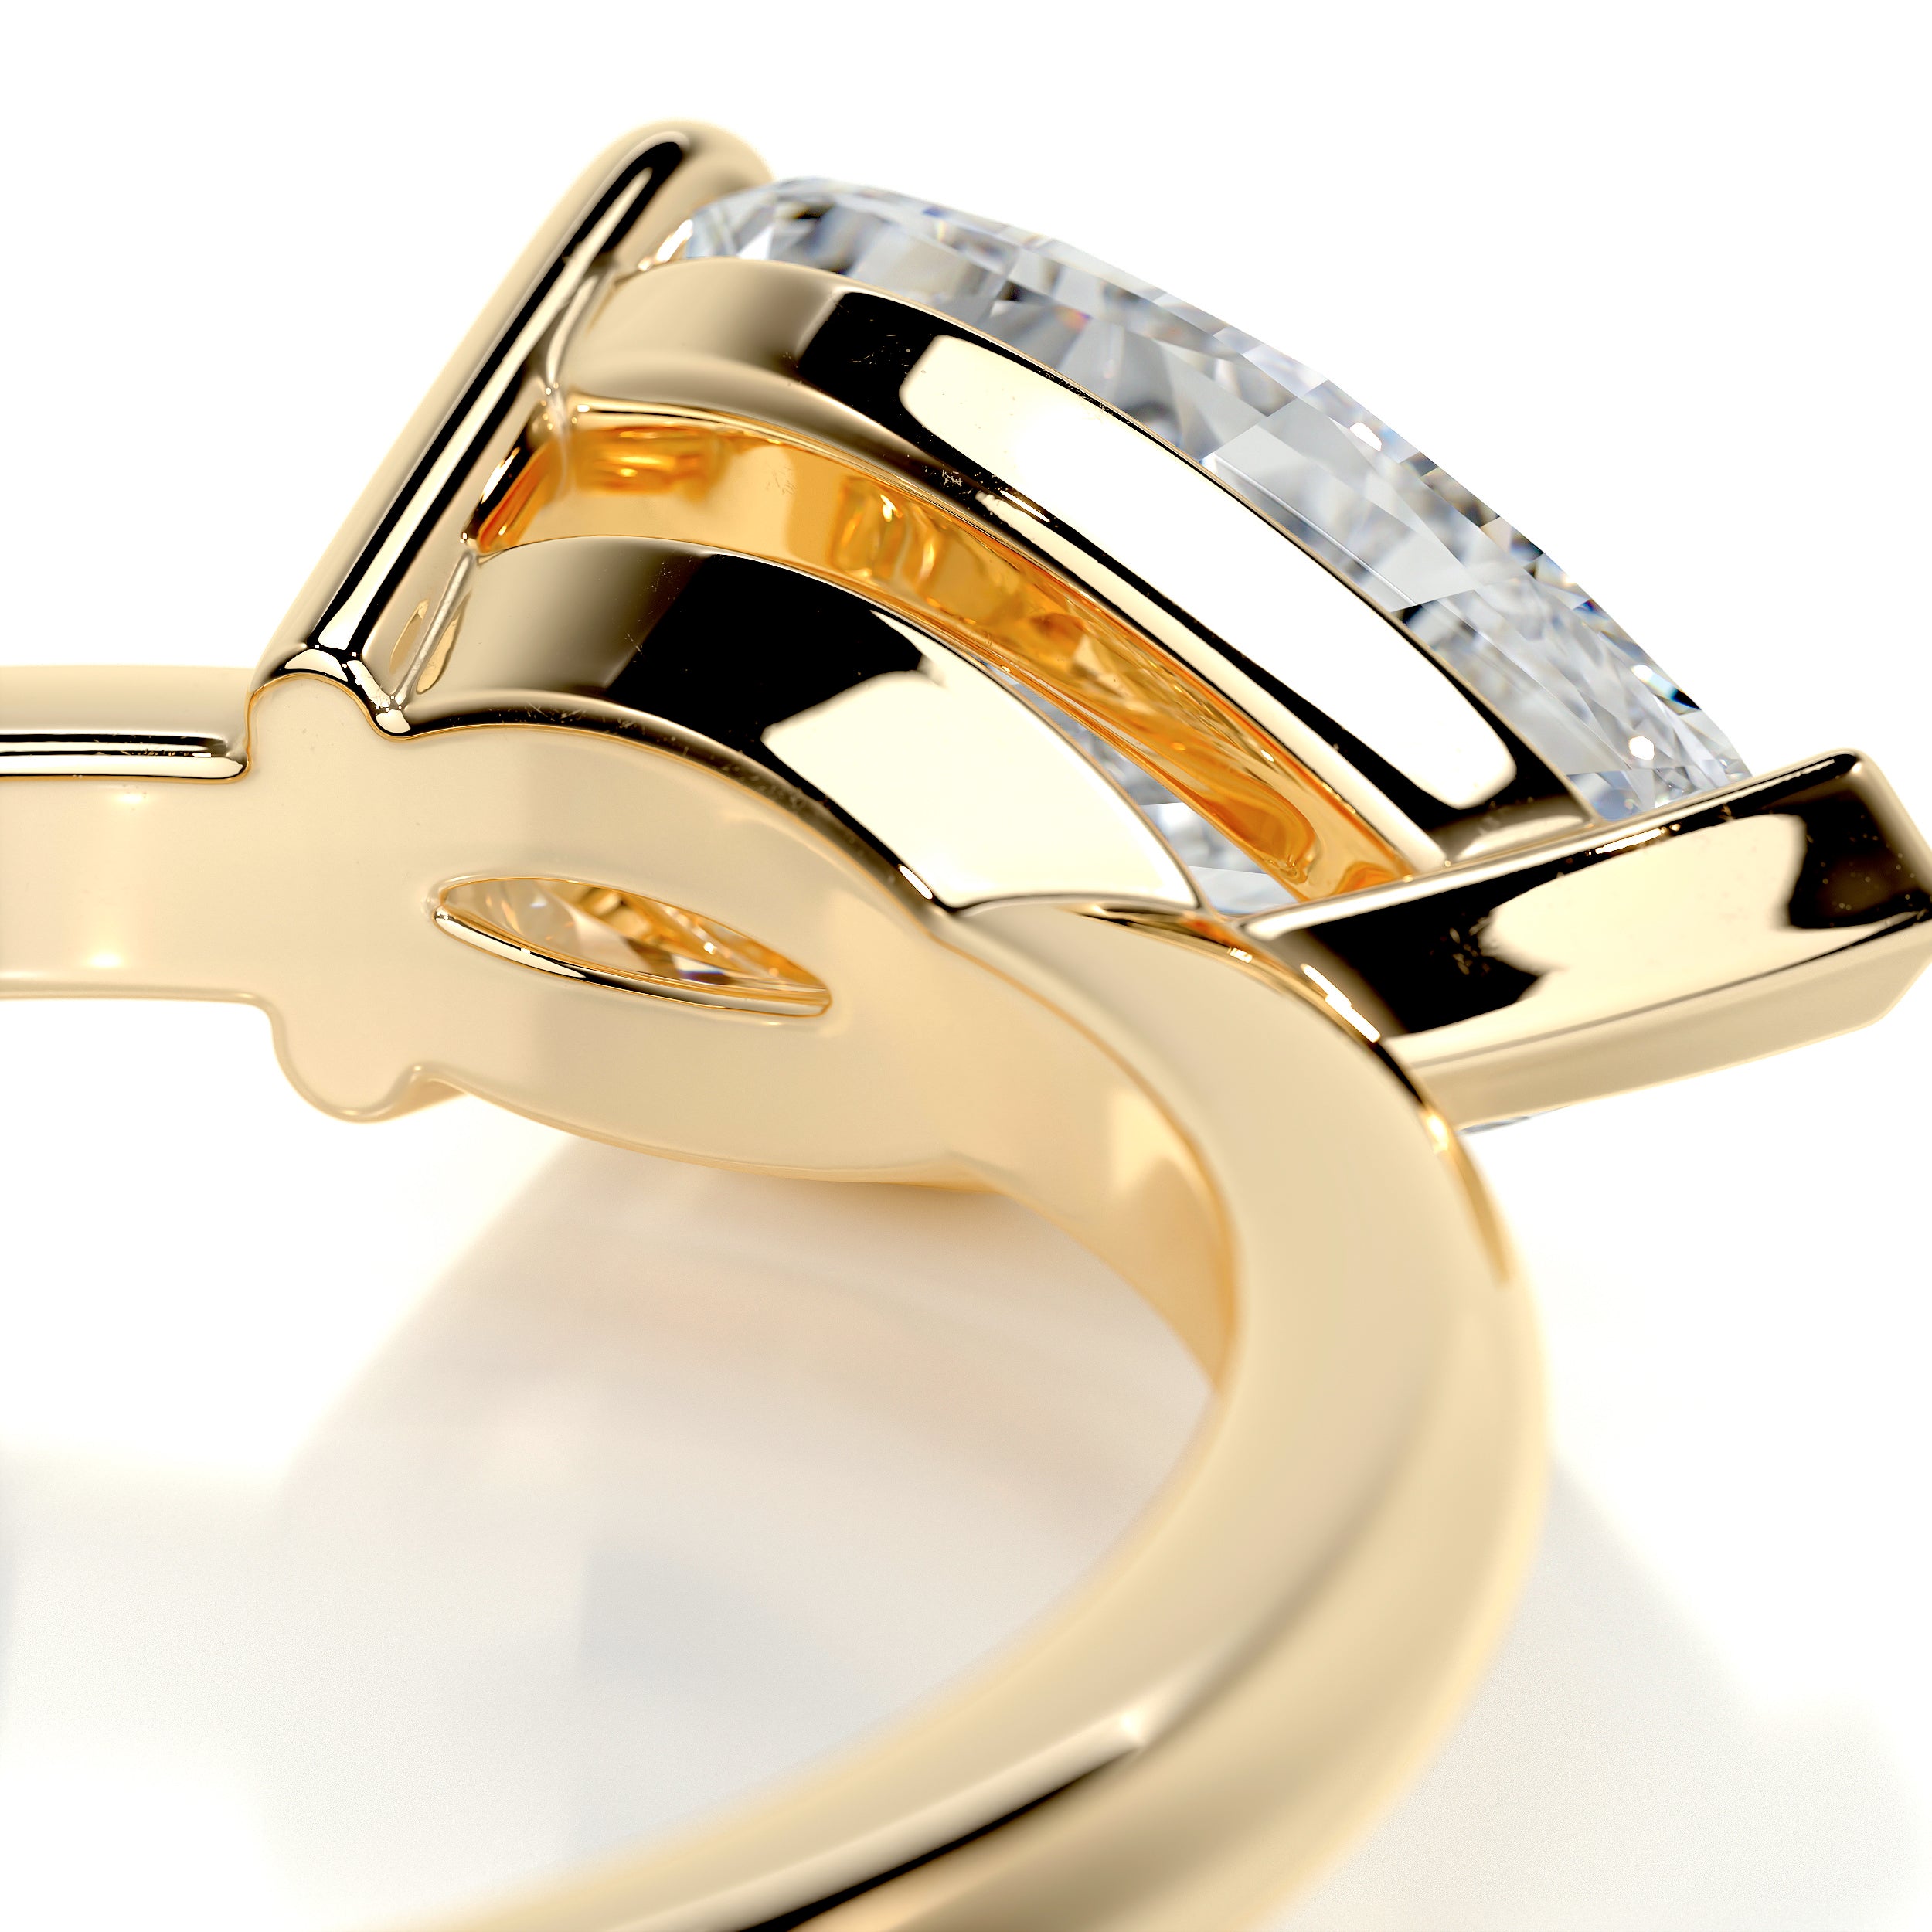 Miriam Diamond Engagement Ring -18K Yellow Gold